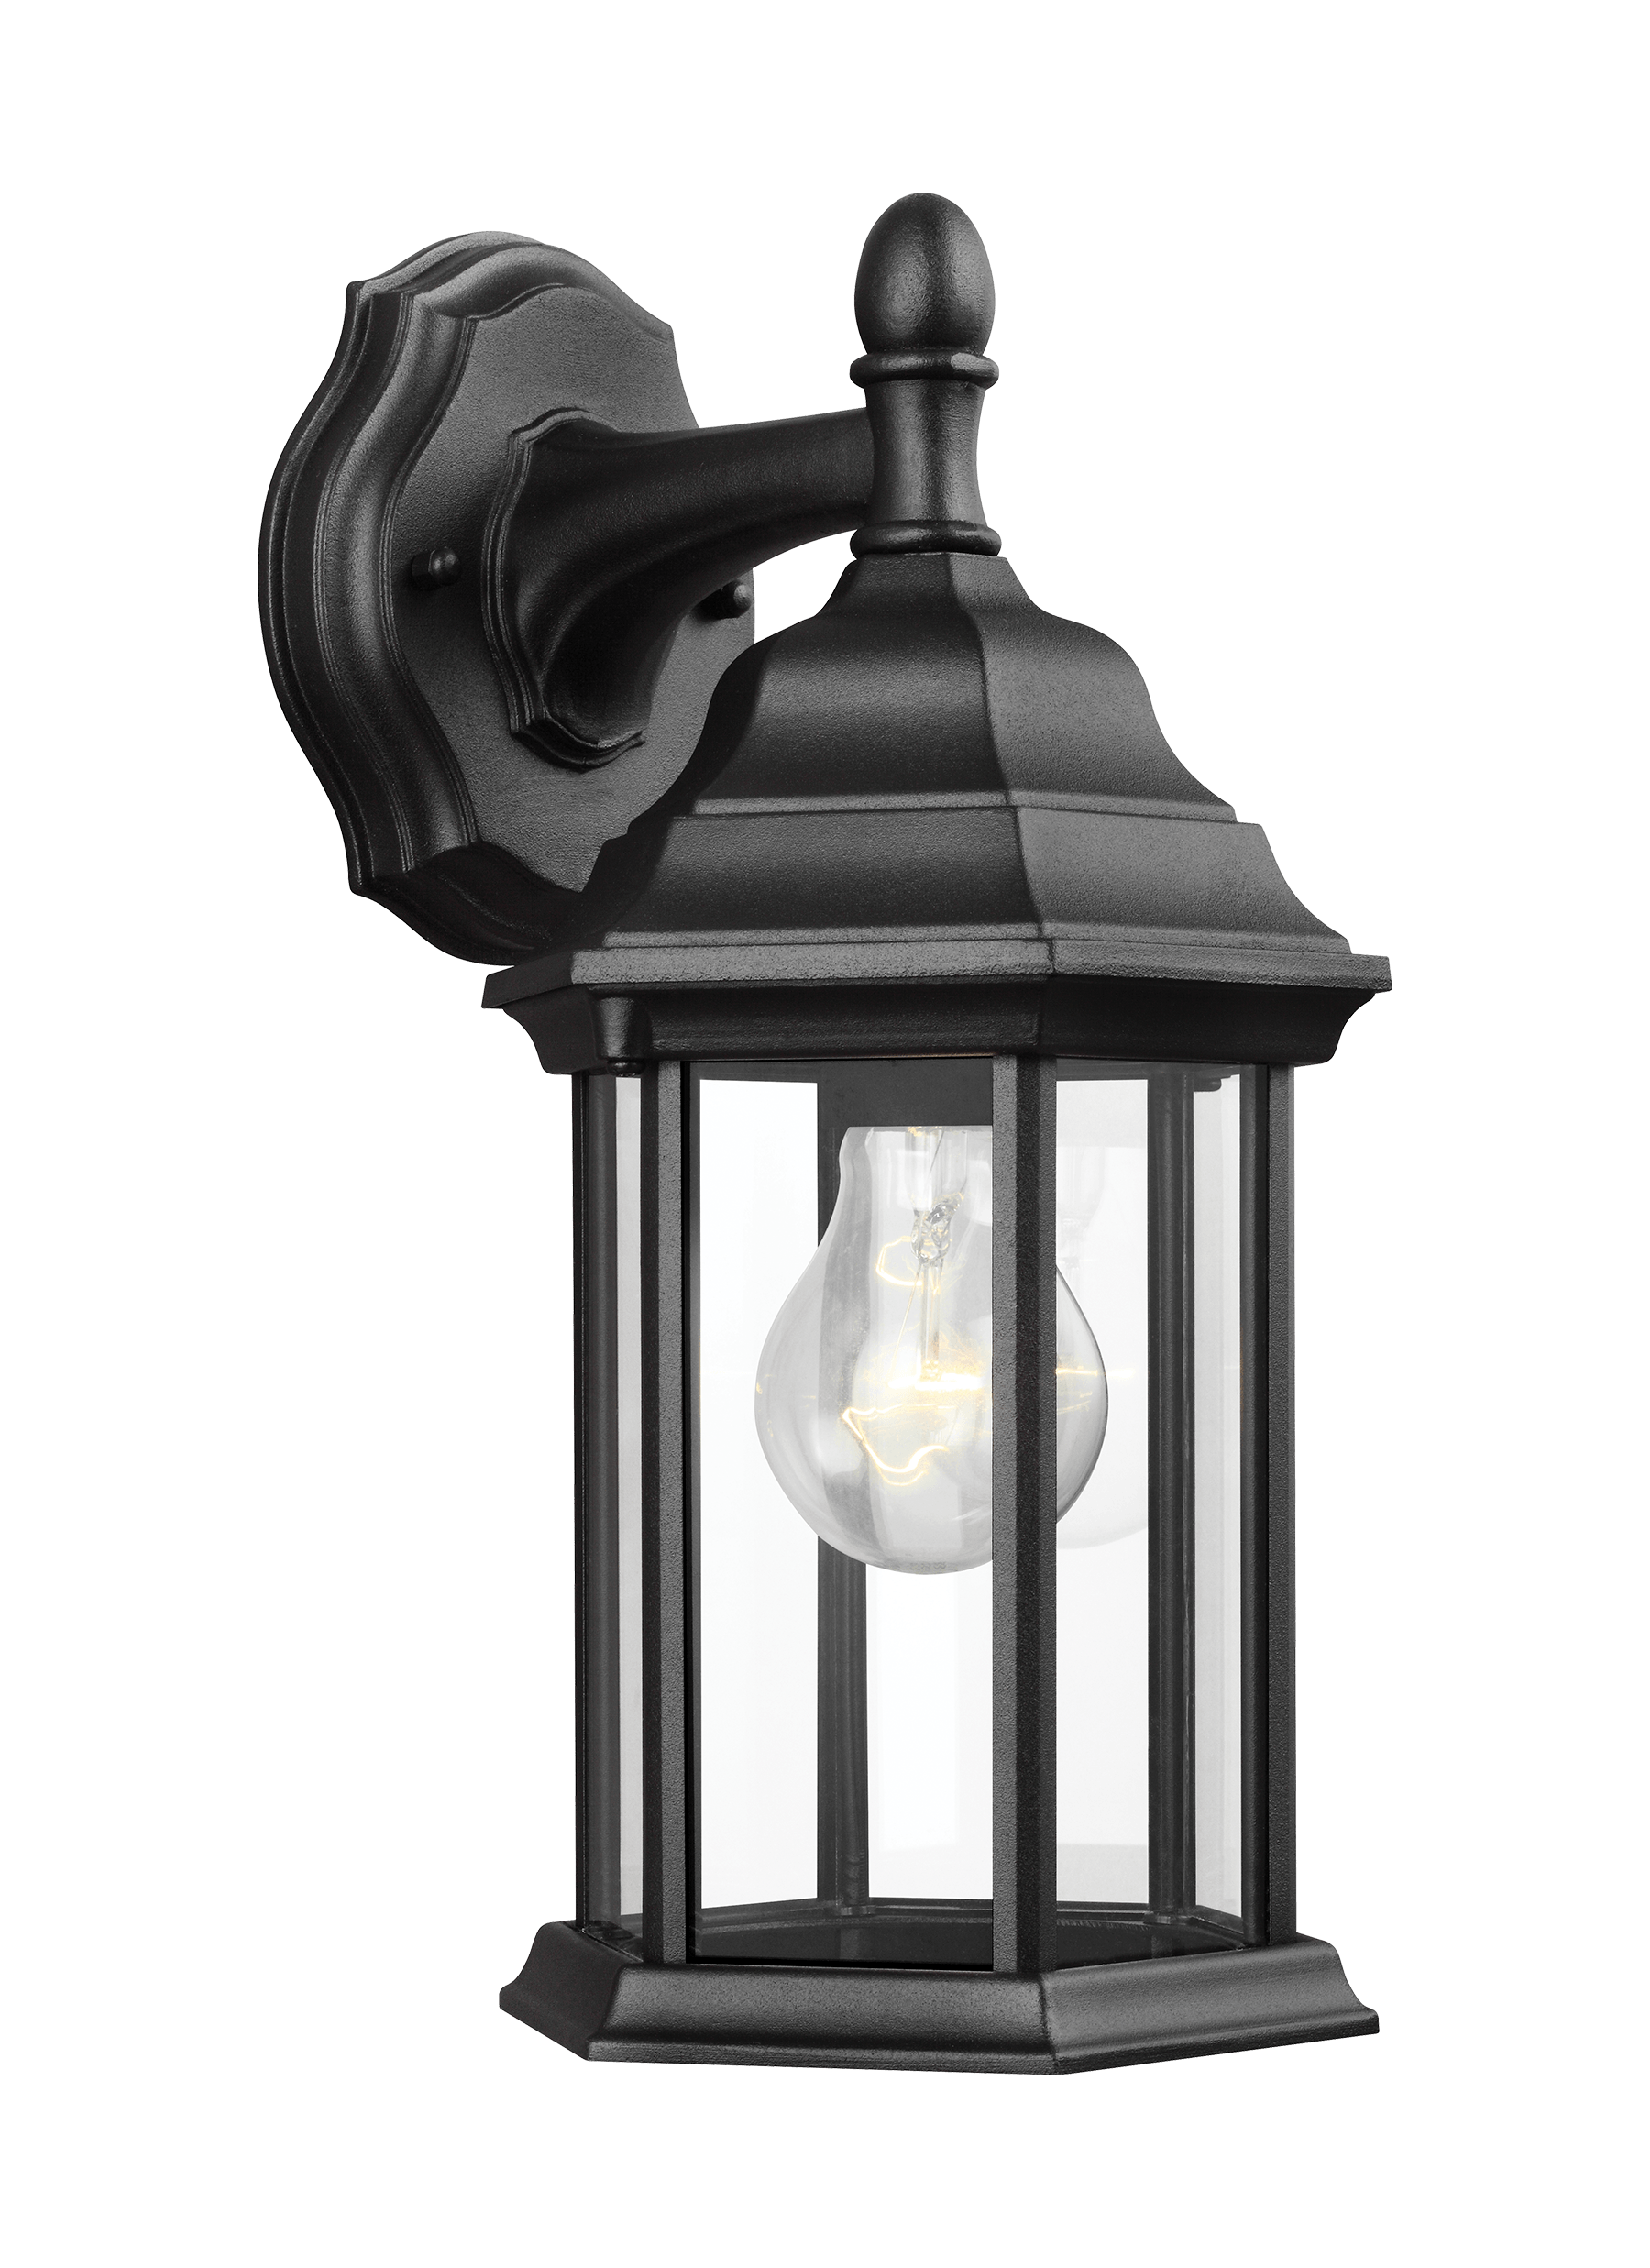 Sevier Small One Light Downlight Outdoor Wall Lantern - Black Outdoor Sea Gull Lighting 